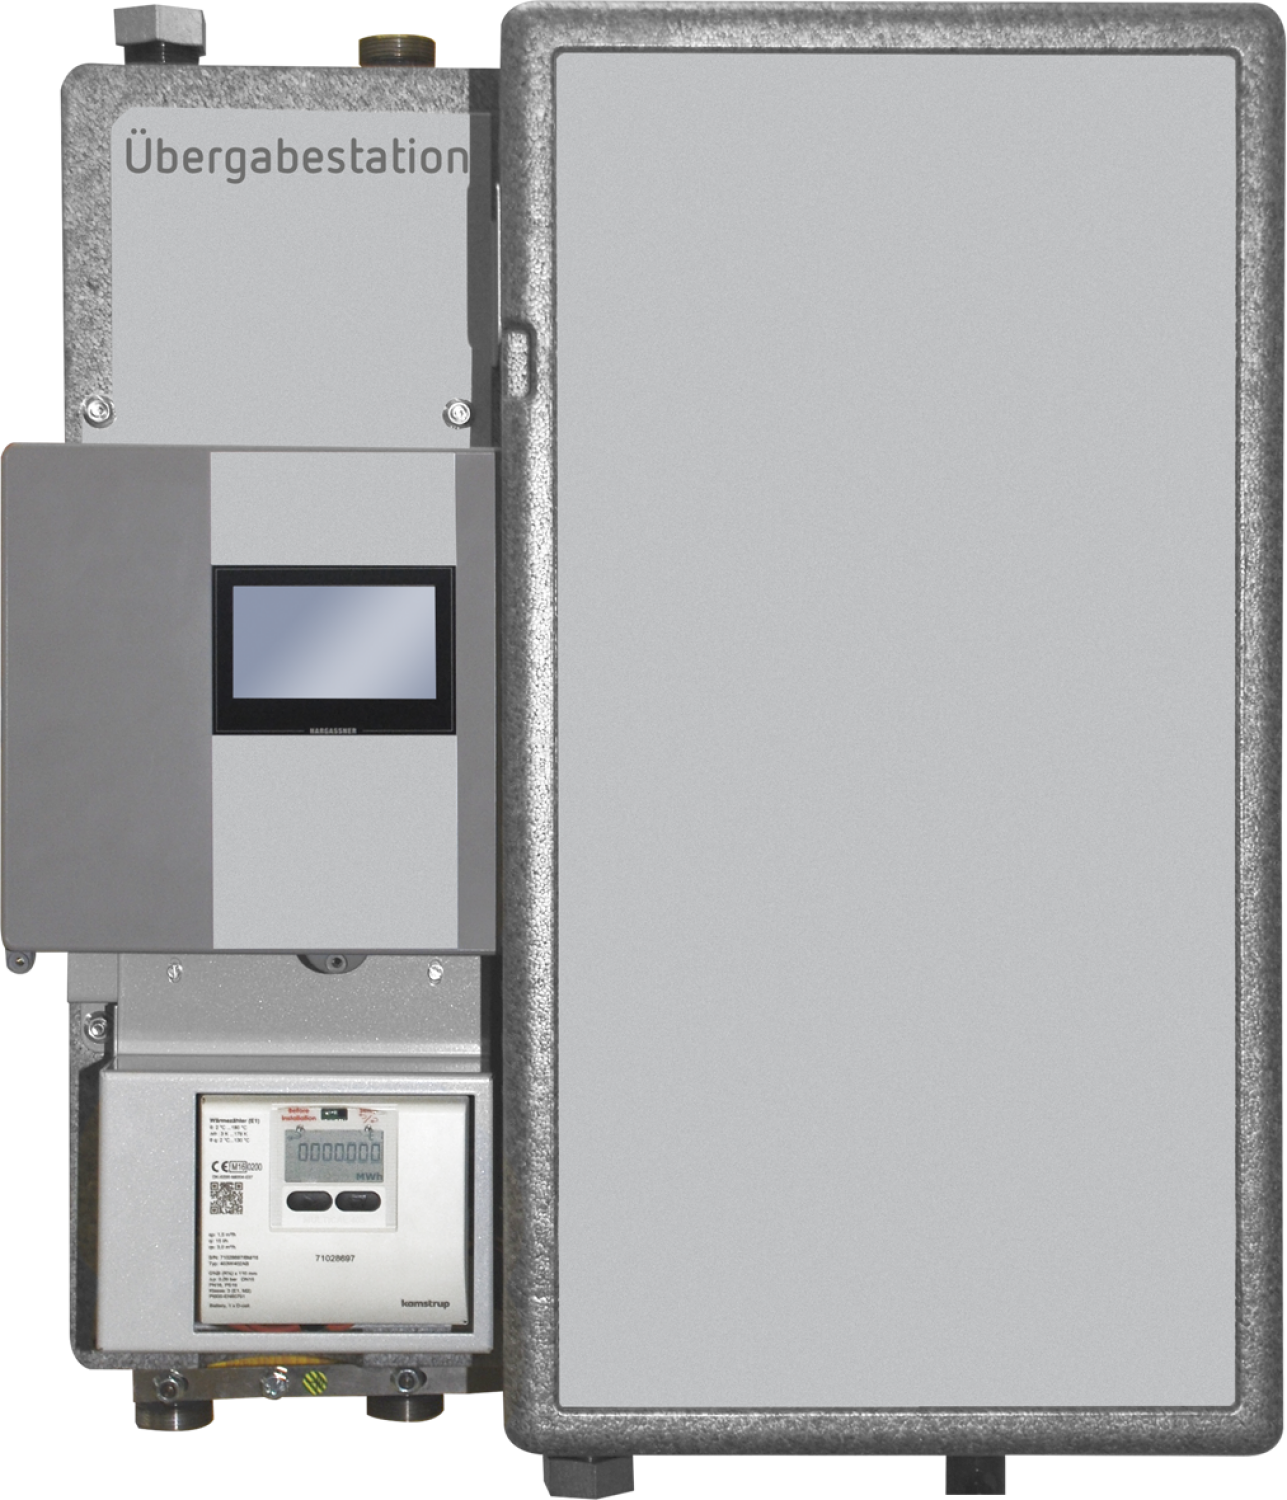 Fernwärmeübergabestation mit eingebautem WMZ und M-Bus-Converter für Wärmeabgabeleistung